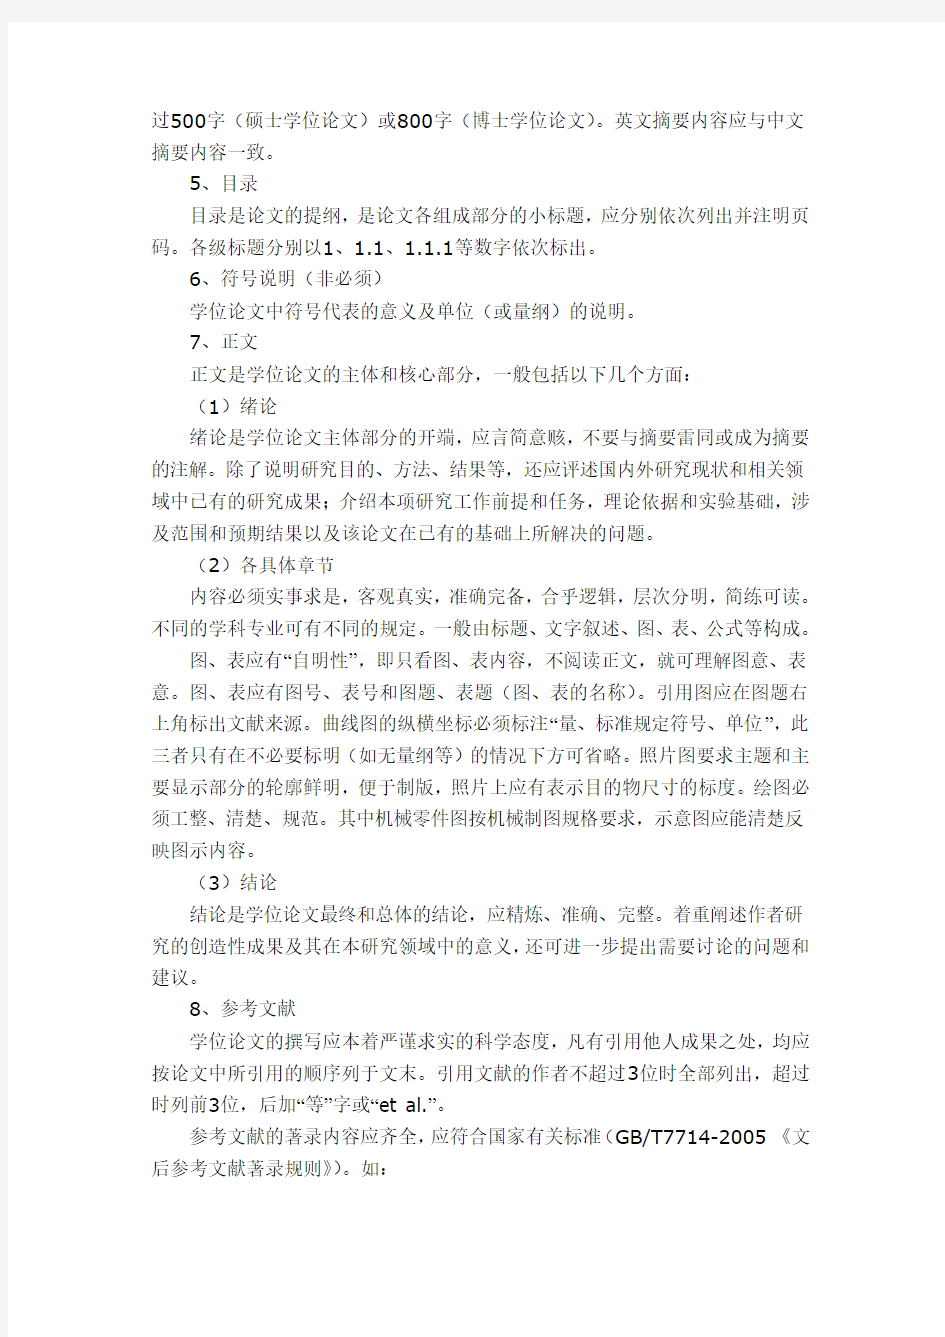 上海交通大学博士、硕士学位论文撰写要求